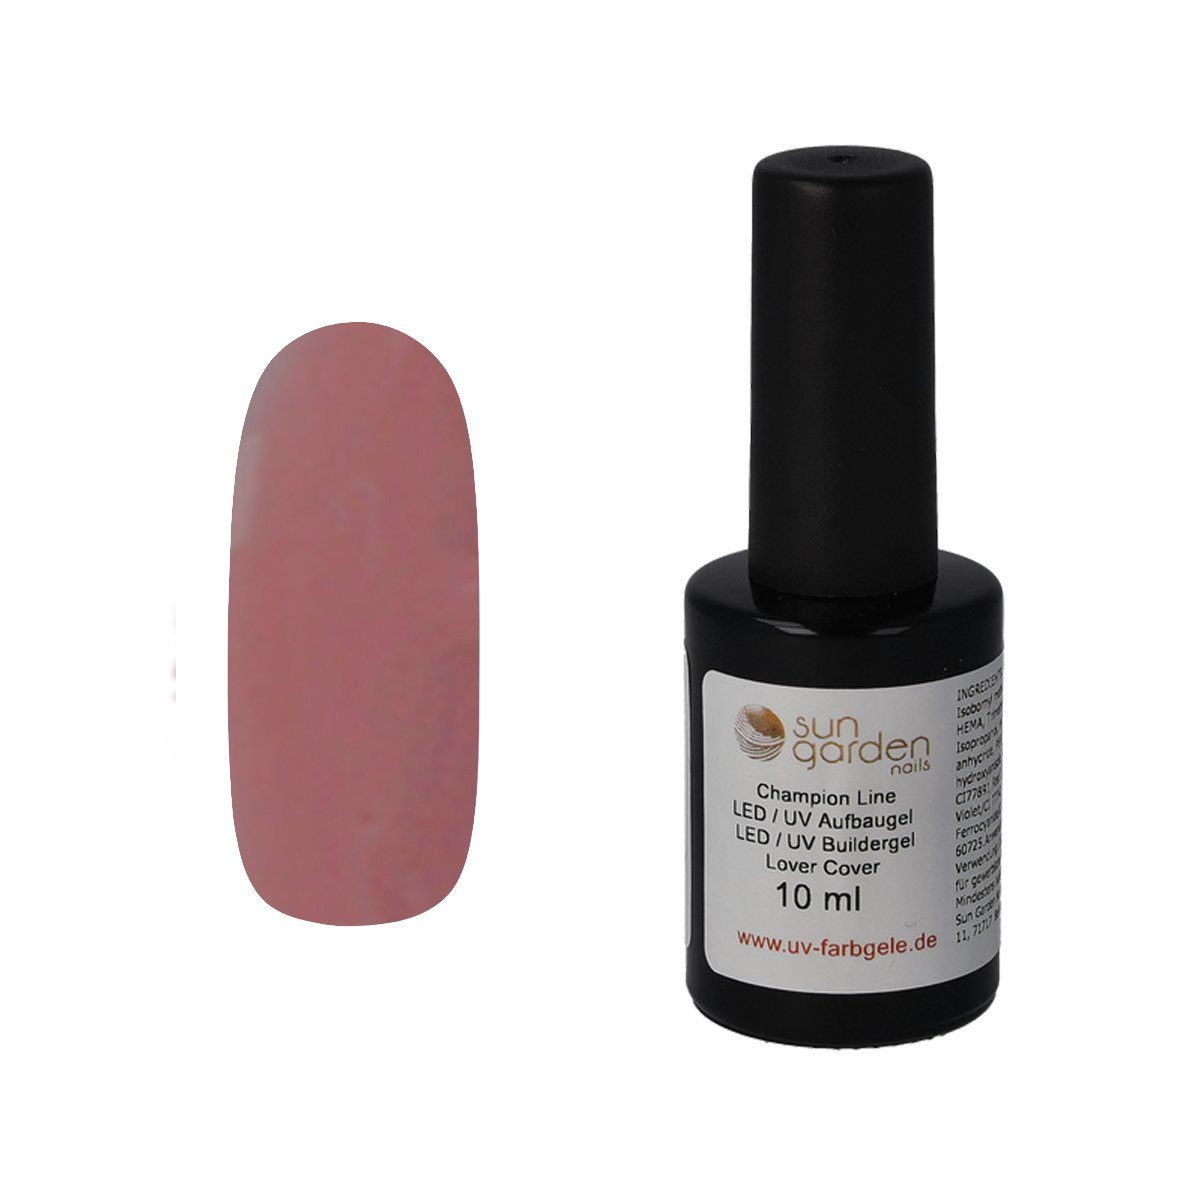 Sun Garden Nails UV-Gel 10 ml UV Aufbaugel Lover Cover - Pinselflasche